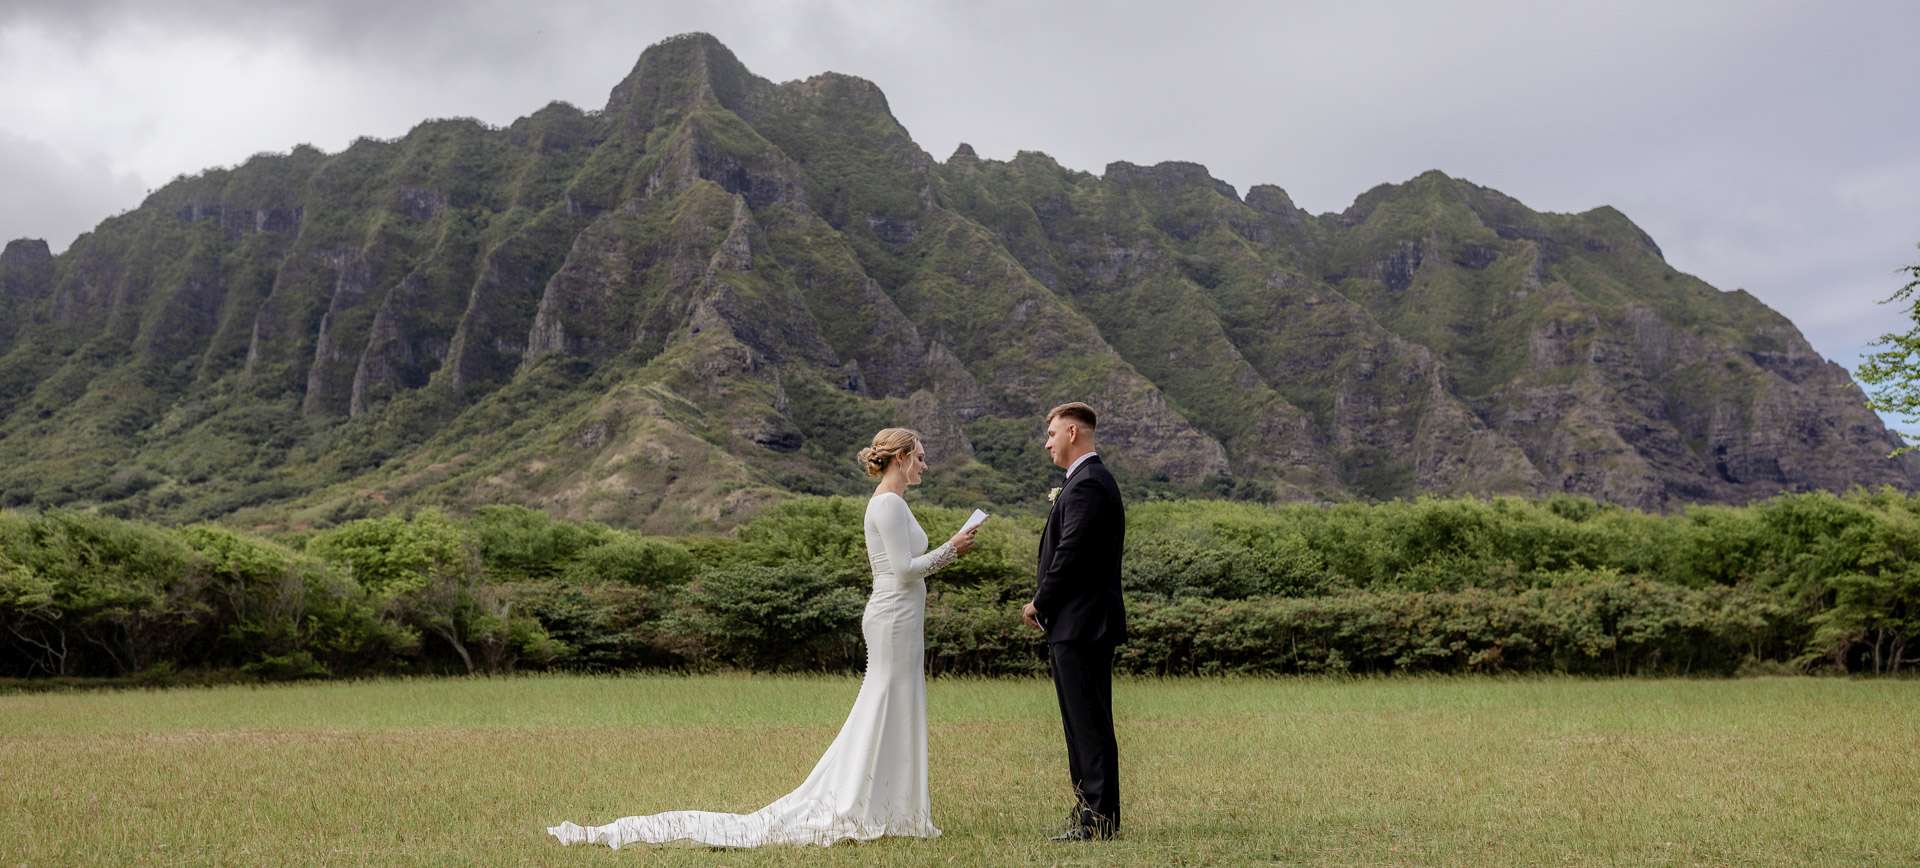 hawaii elopement package in oahu